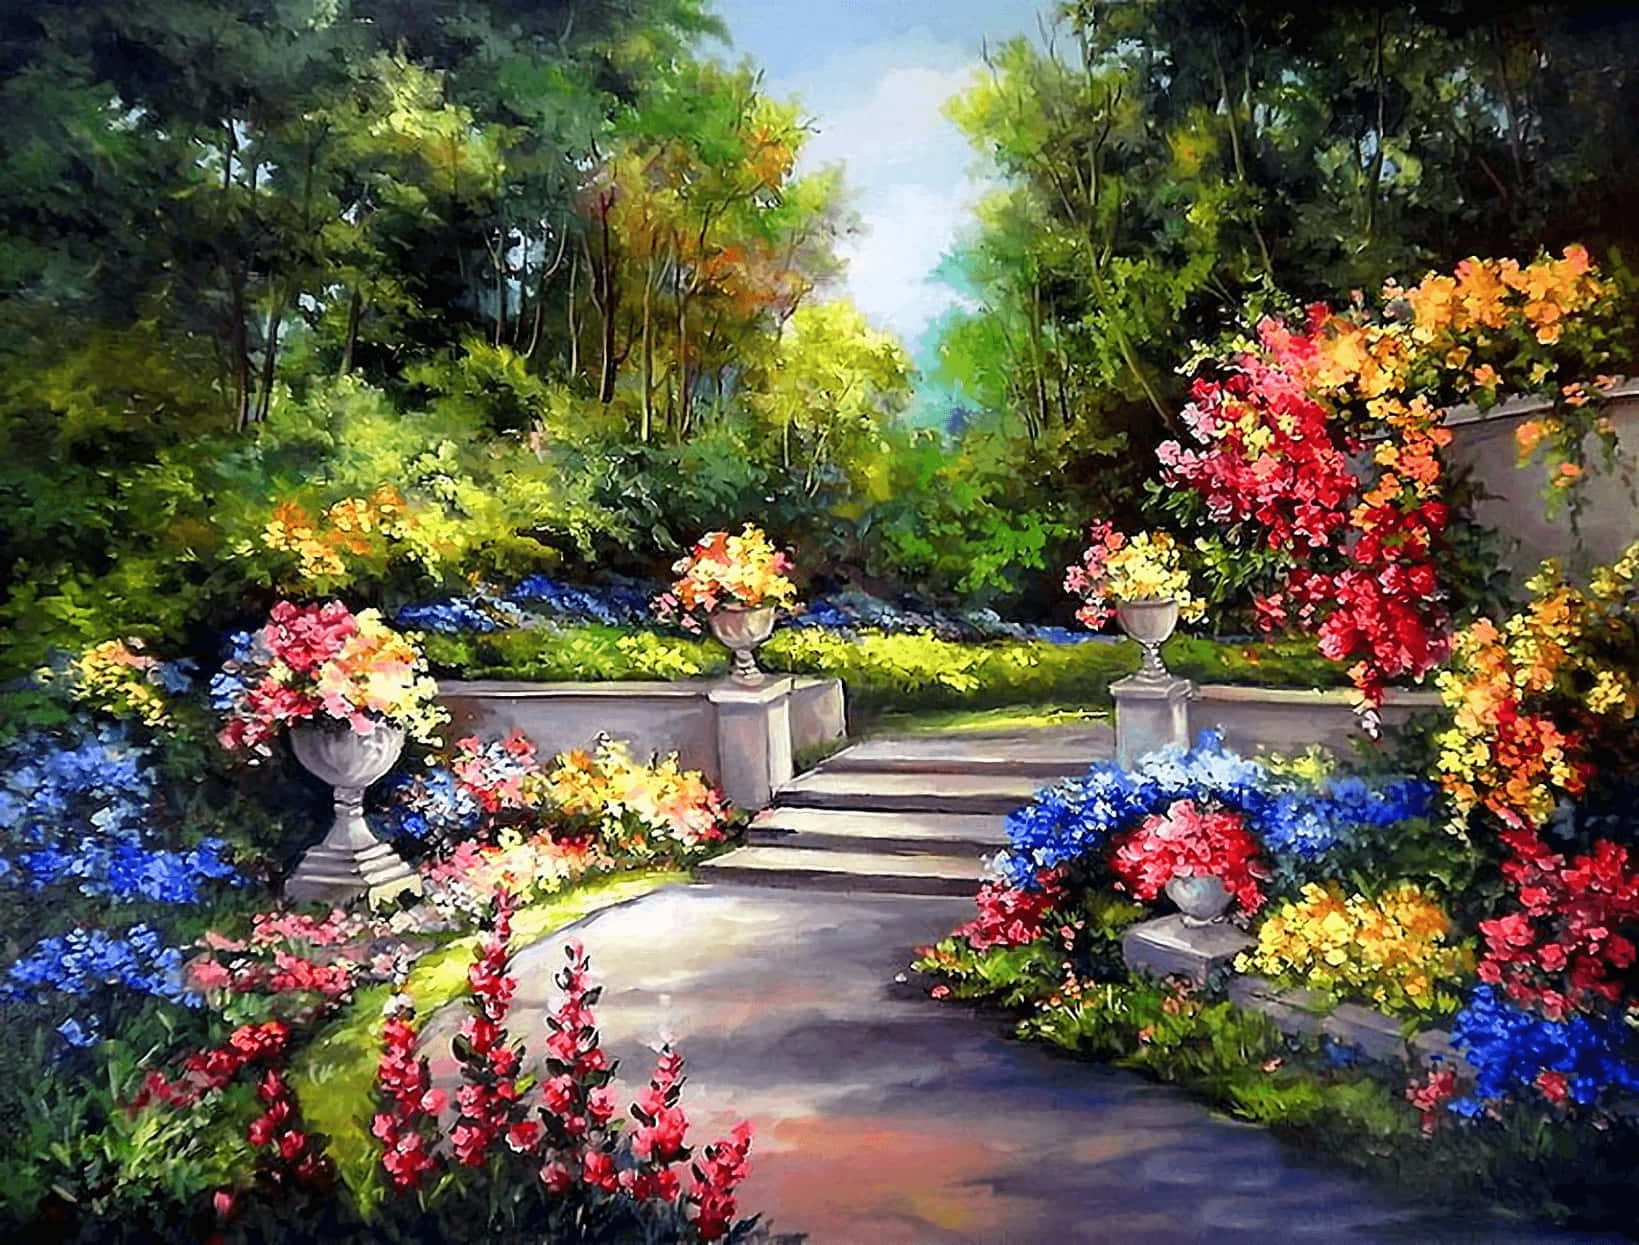 Mystical Fantasy Garden At Dusk Wallpaper